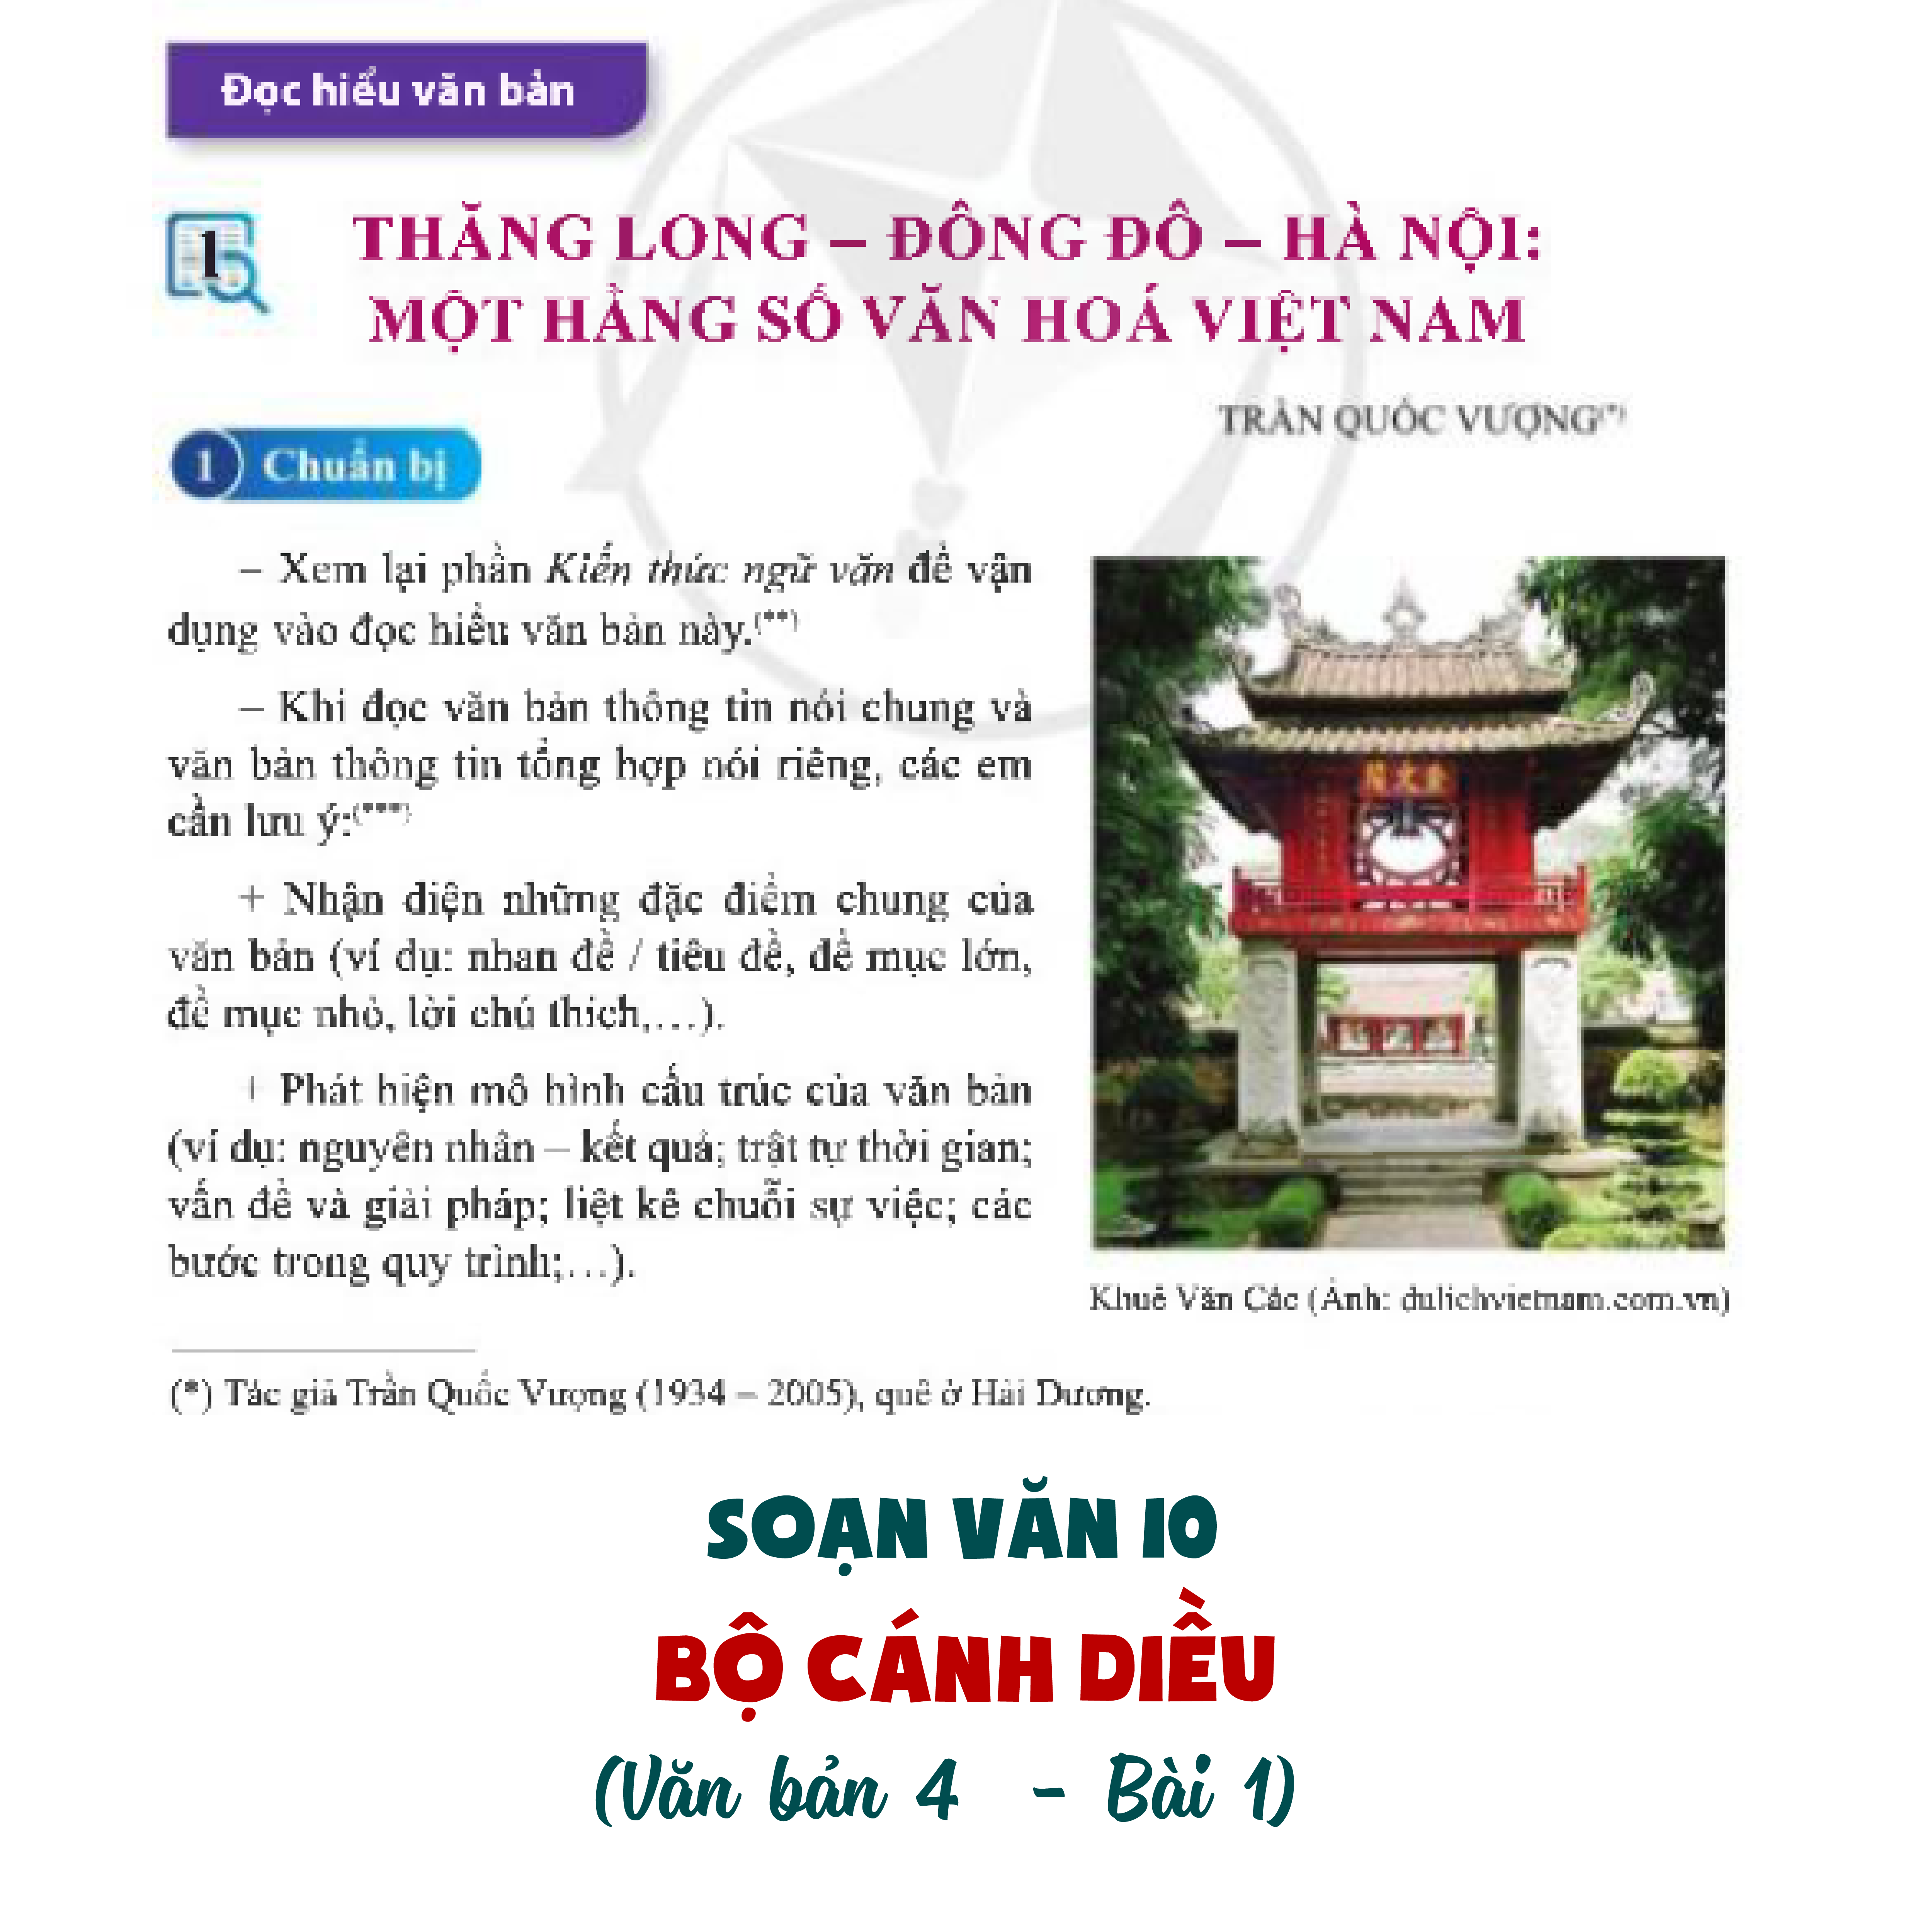 Soạn Văn lớp 10 Bộ Cánh diều | Văn bản 1: Thăng Long - Đông Đô - Hà Nội: Một hằng số văn hóa Việt Nam (Bài 4: Văn bản thông tin)